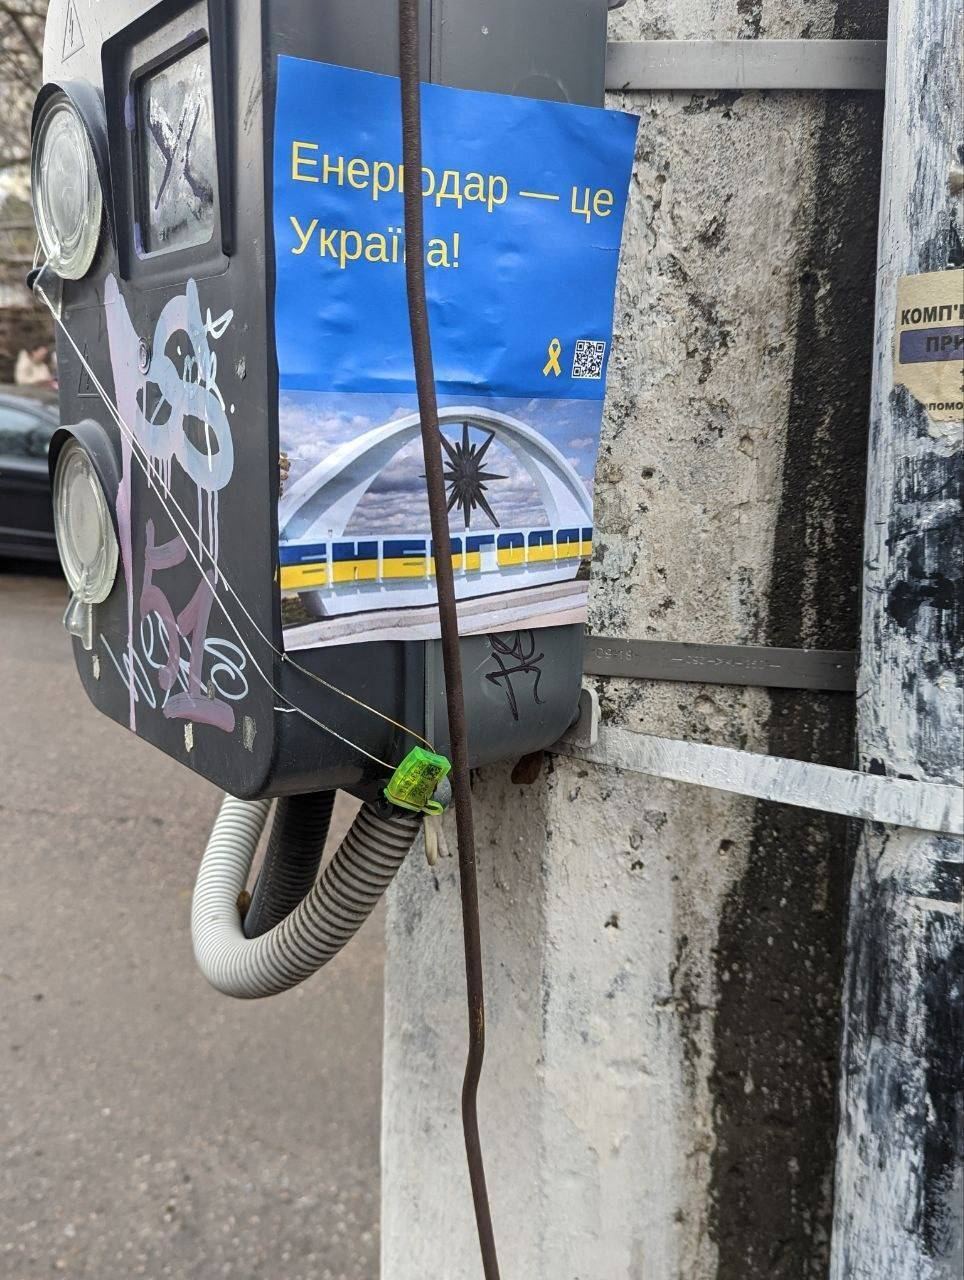 "Енергодар – це Україна": в окупованому місті влаштували сміливу акцію, а російську газету показово спалили. Фото і відео